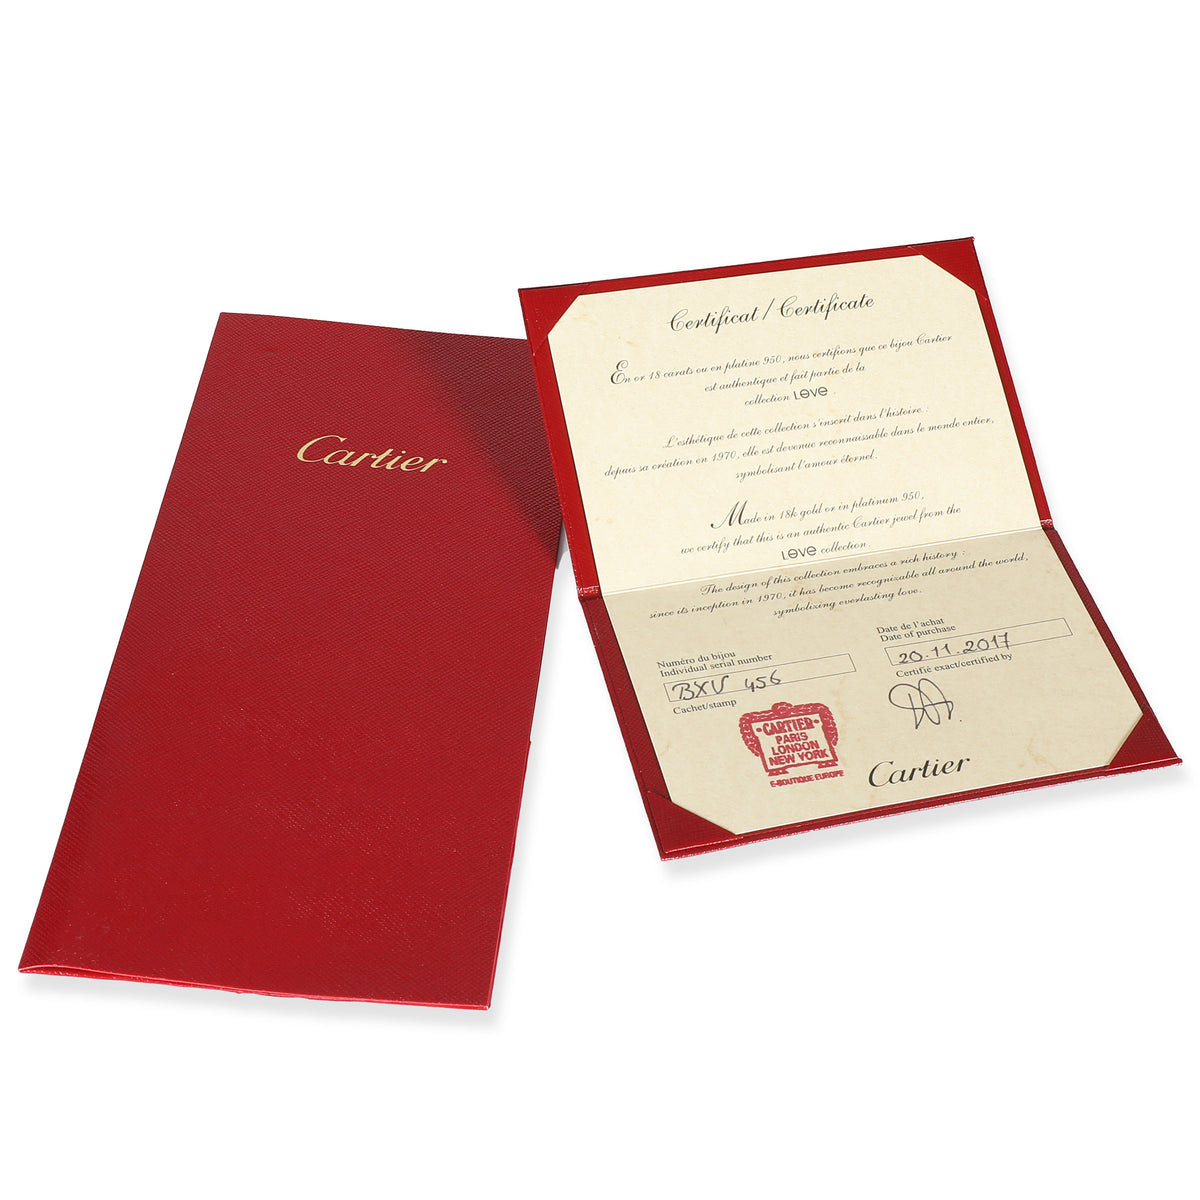 Cartier Love Diamond Hoop Earring in 18K Rose Gold 0.14 CTW